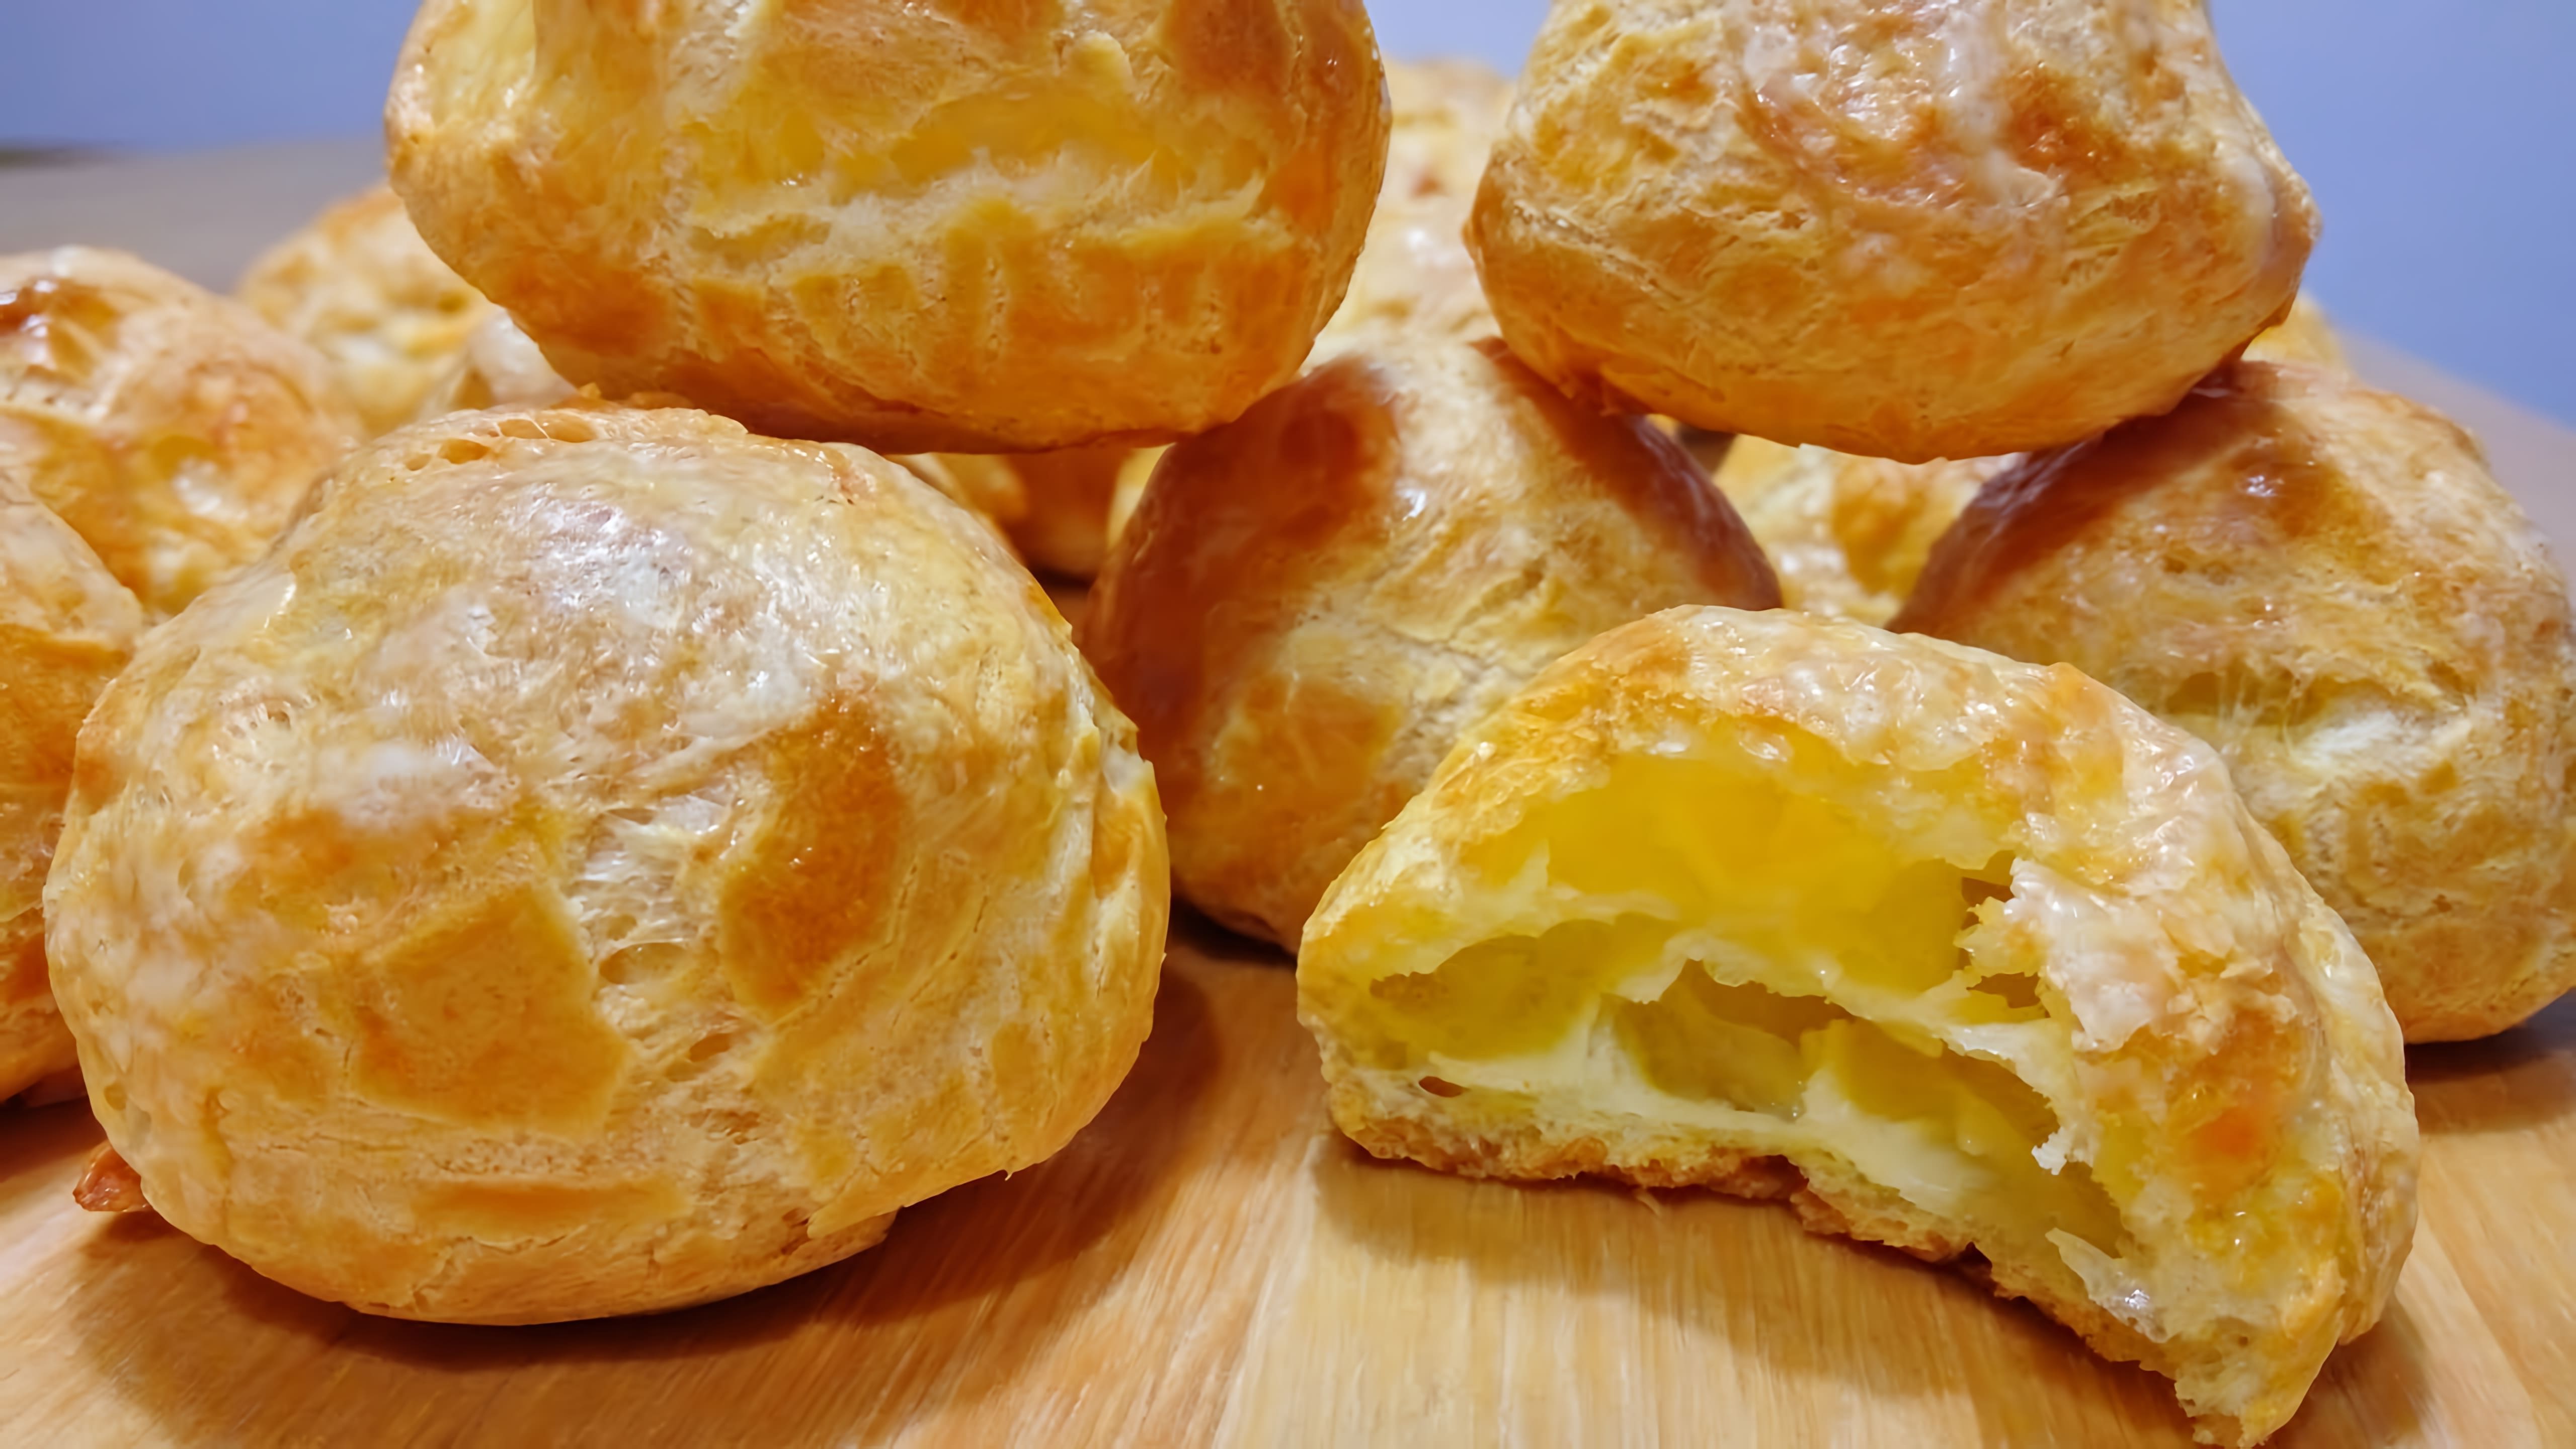 В данном видео демонстрируется процесс приготовления заварных булочек с сыром